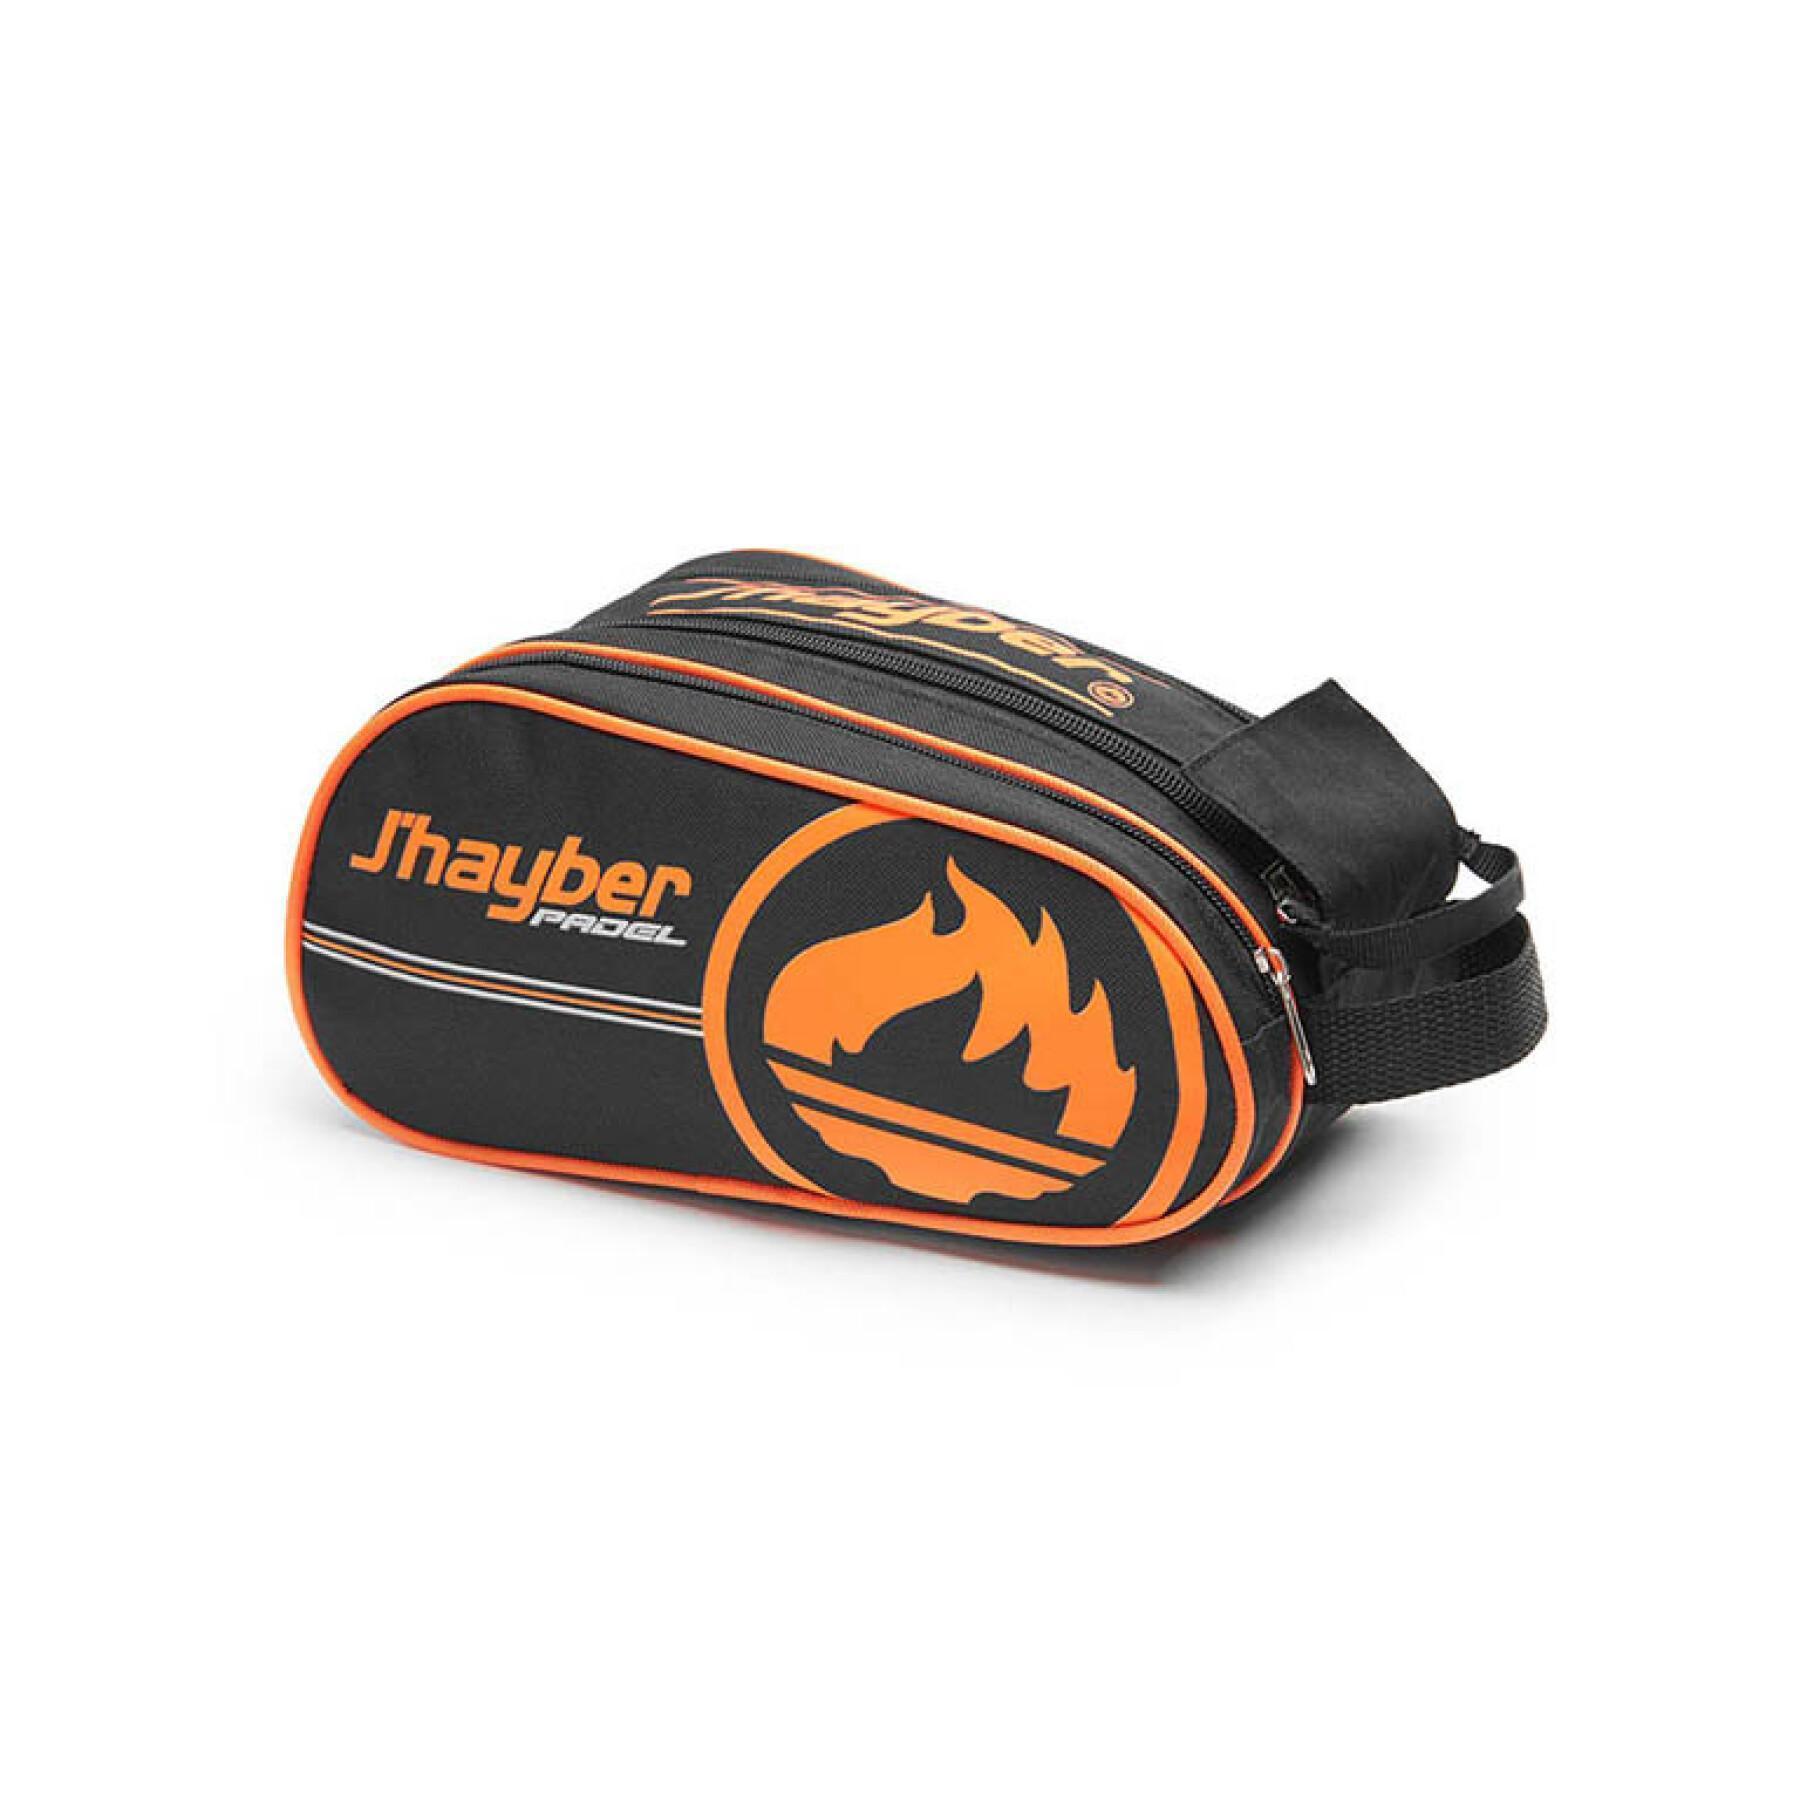 Padel-Schlägertasche mit Logo J'hayber